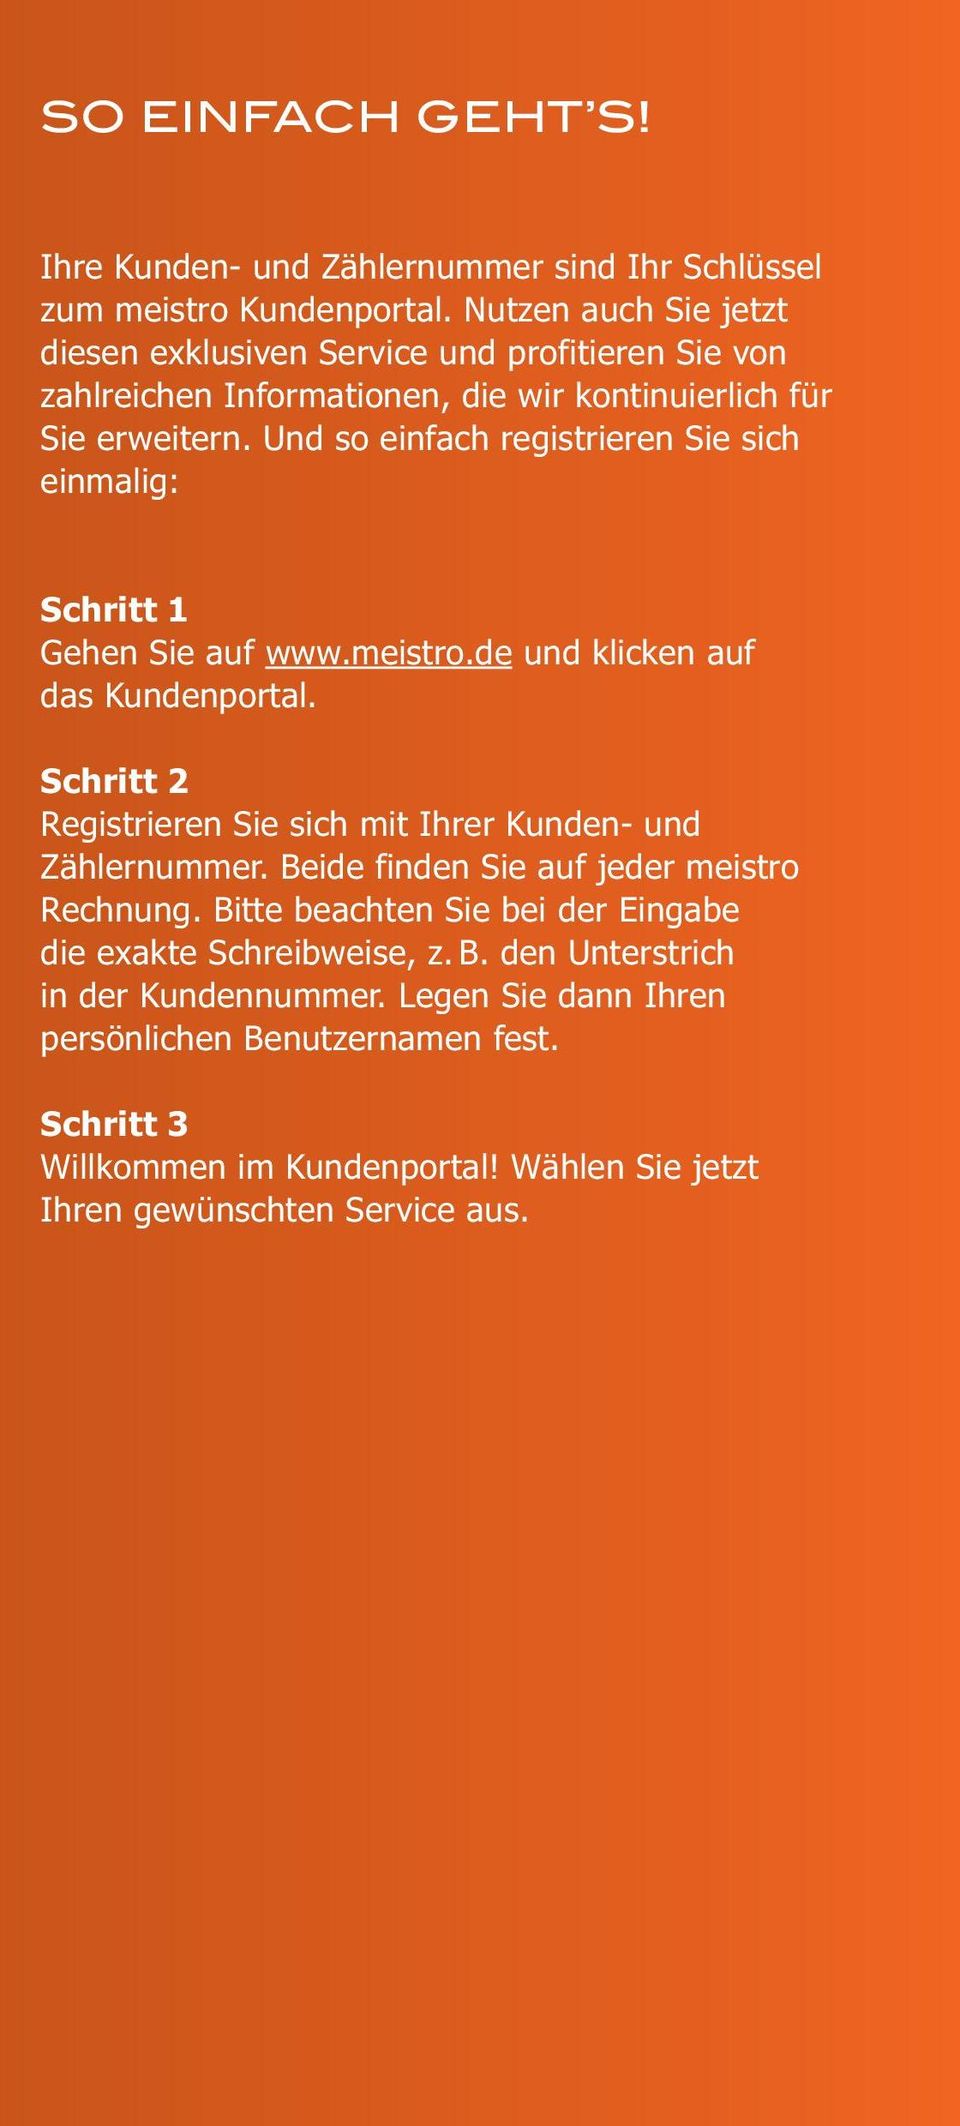 Und so einfach registrieren Sie sich einmalig: Schritt 1 Gehen Sie auf www.meistro.de und klicken auf das Kundenportal.